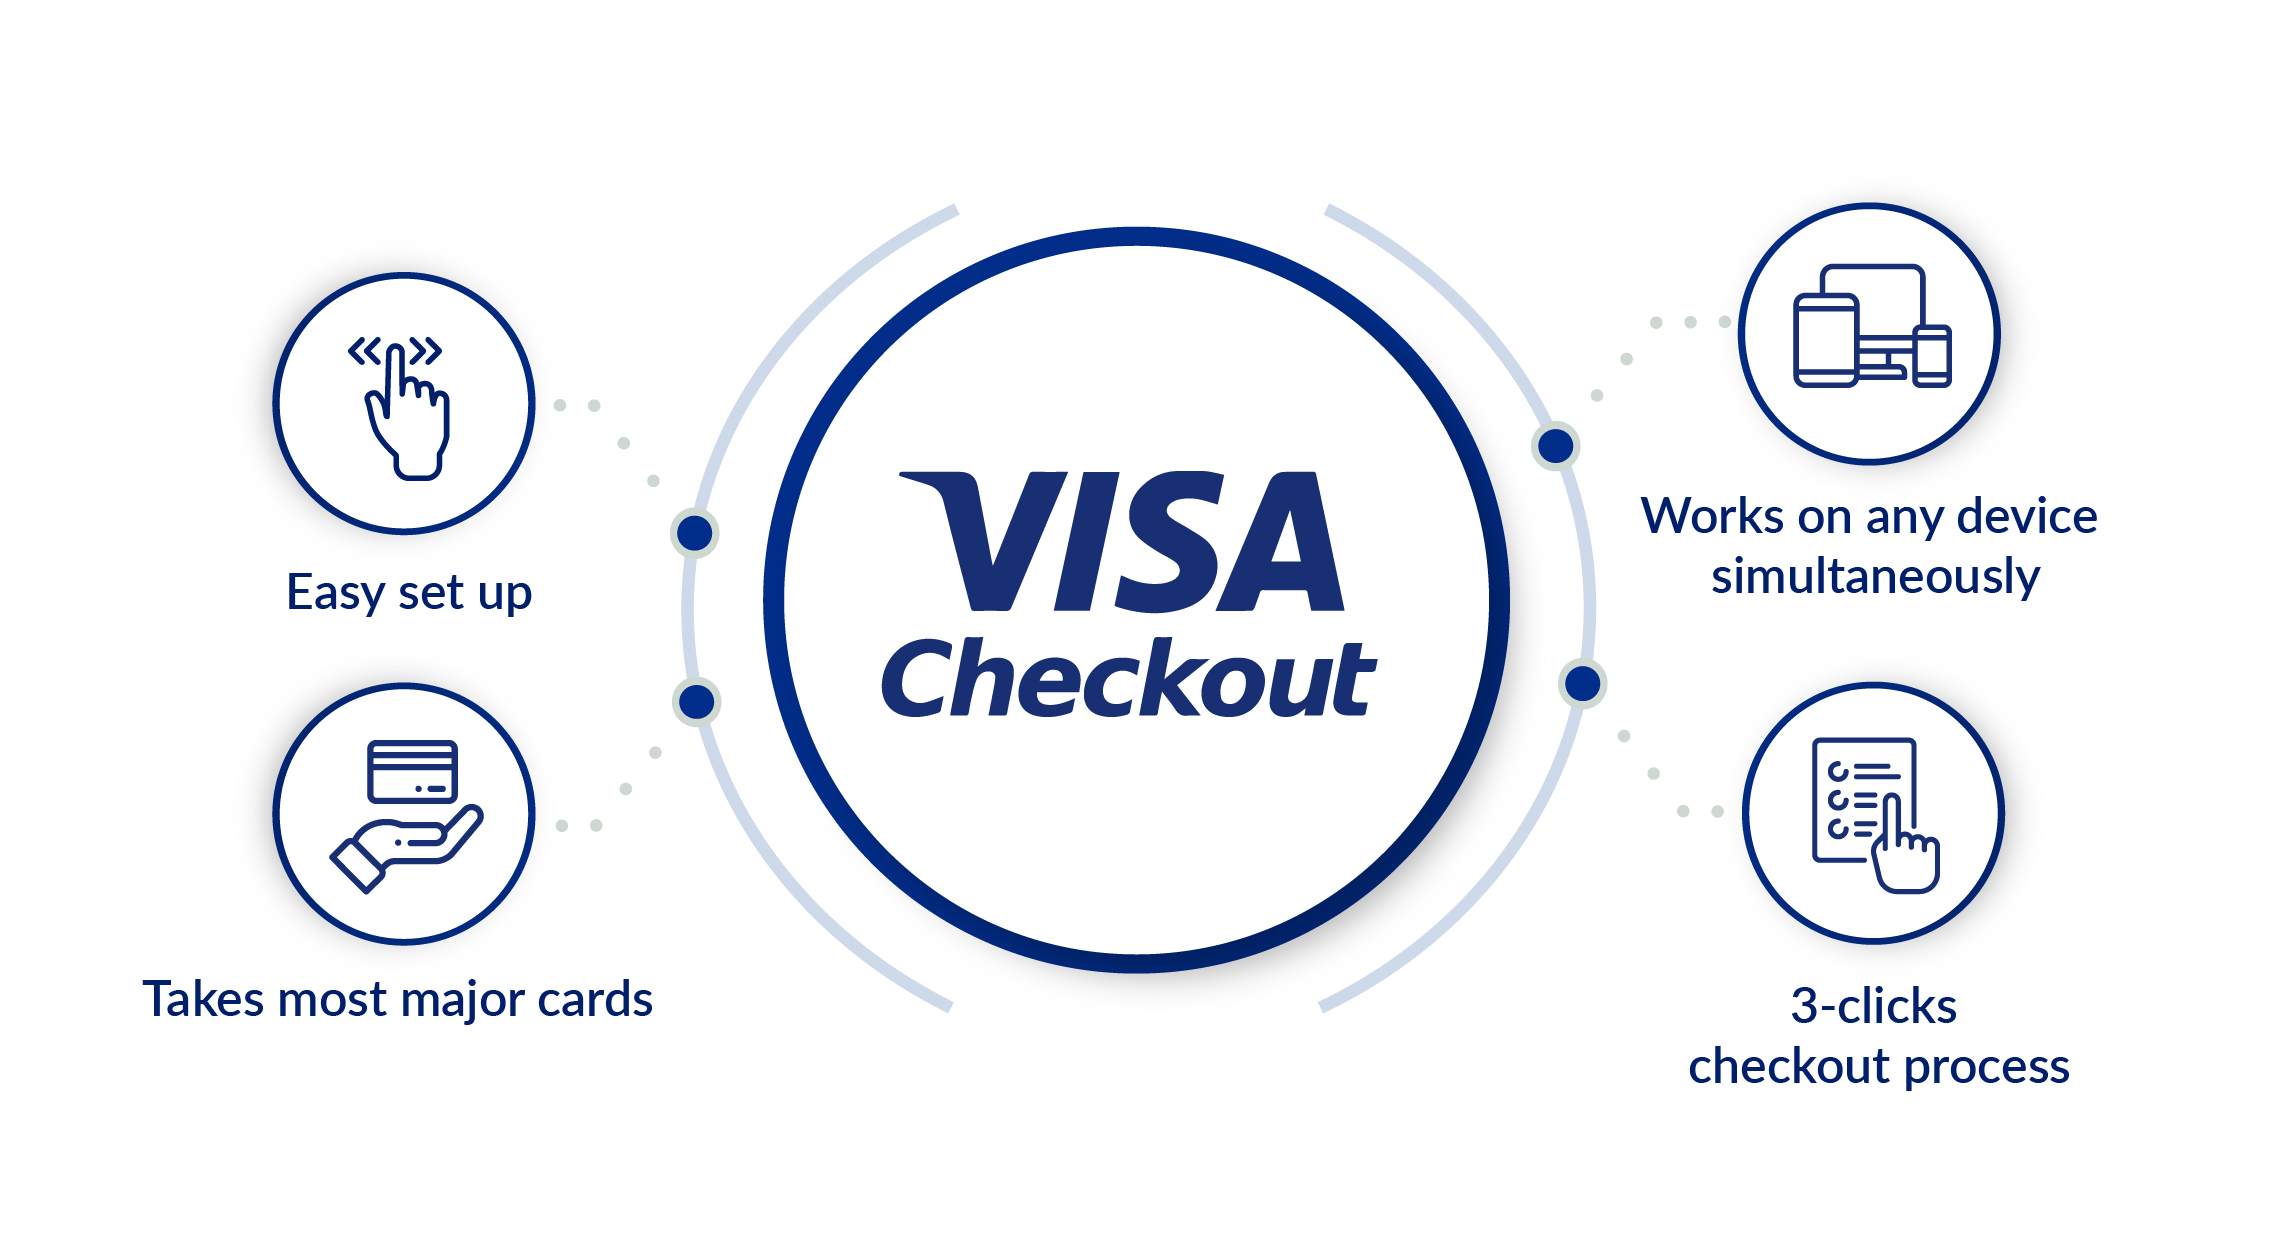 VISA Checkout features